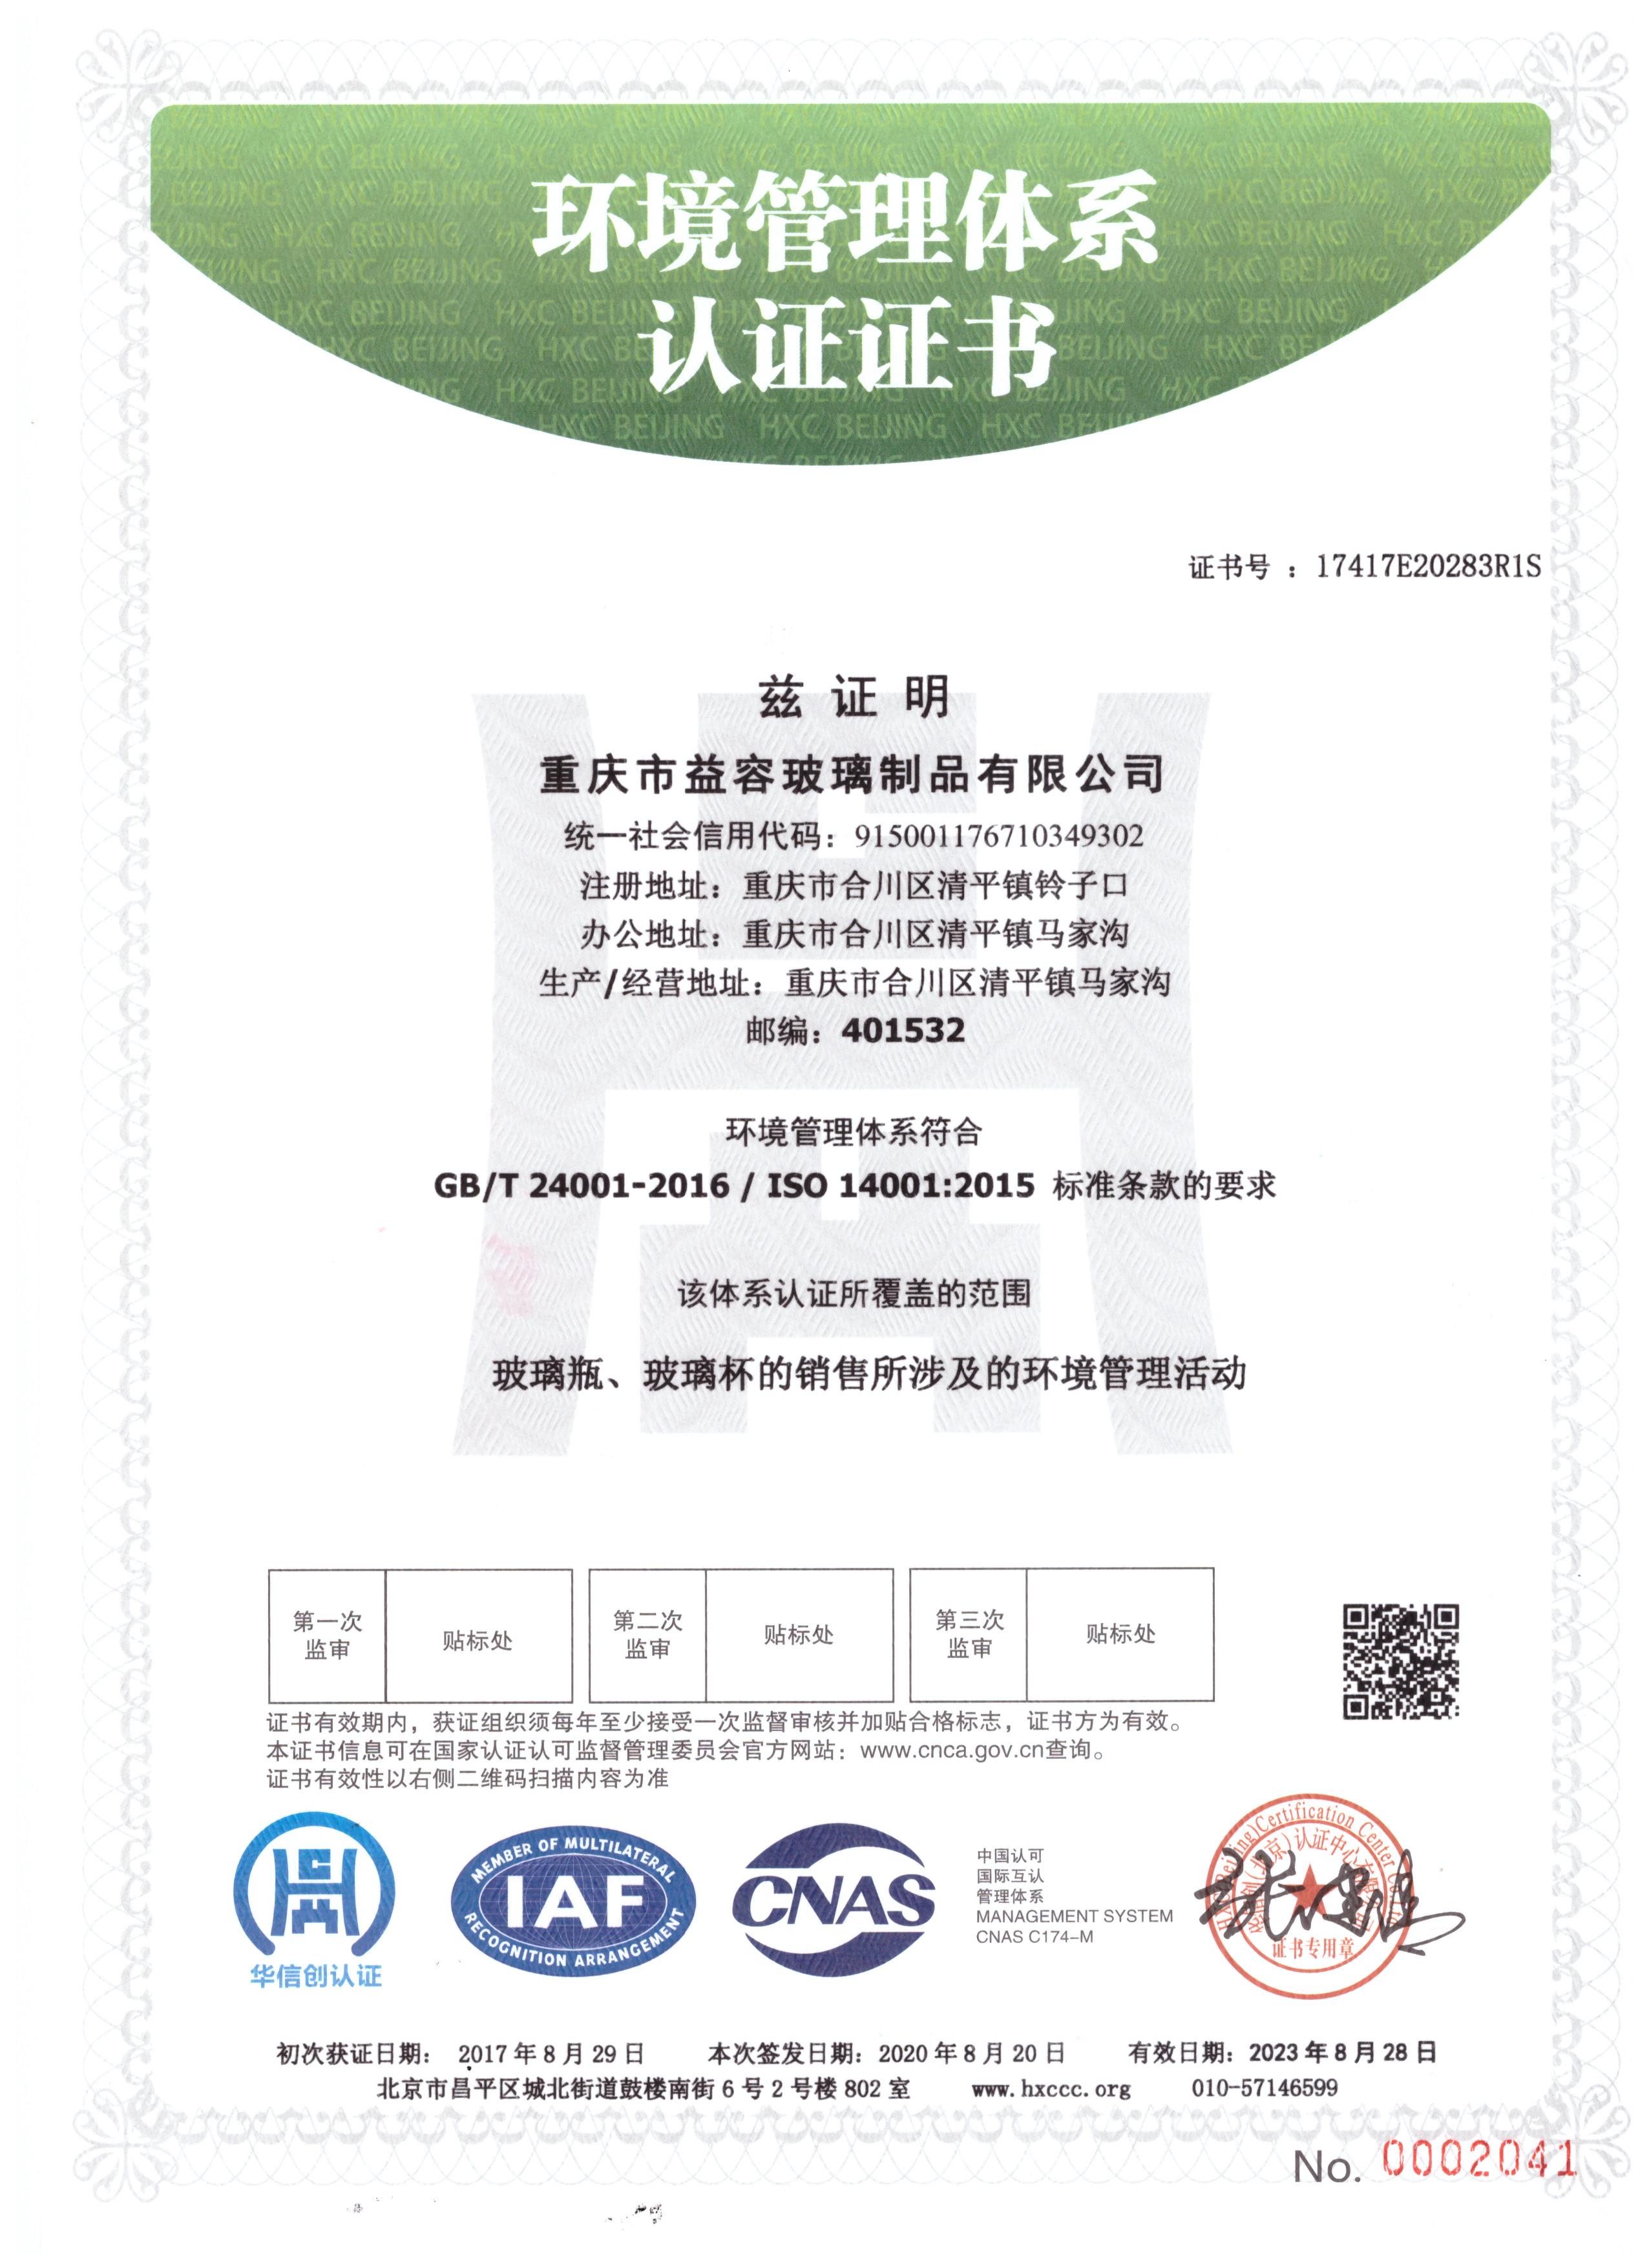 益容玻璃获得环境管理体系认证ISO:14001:2015